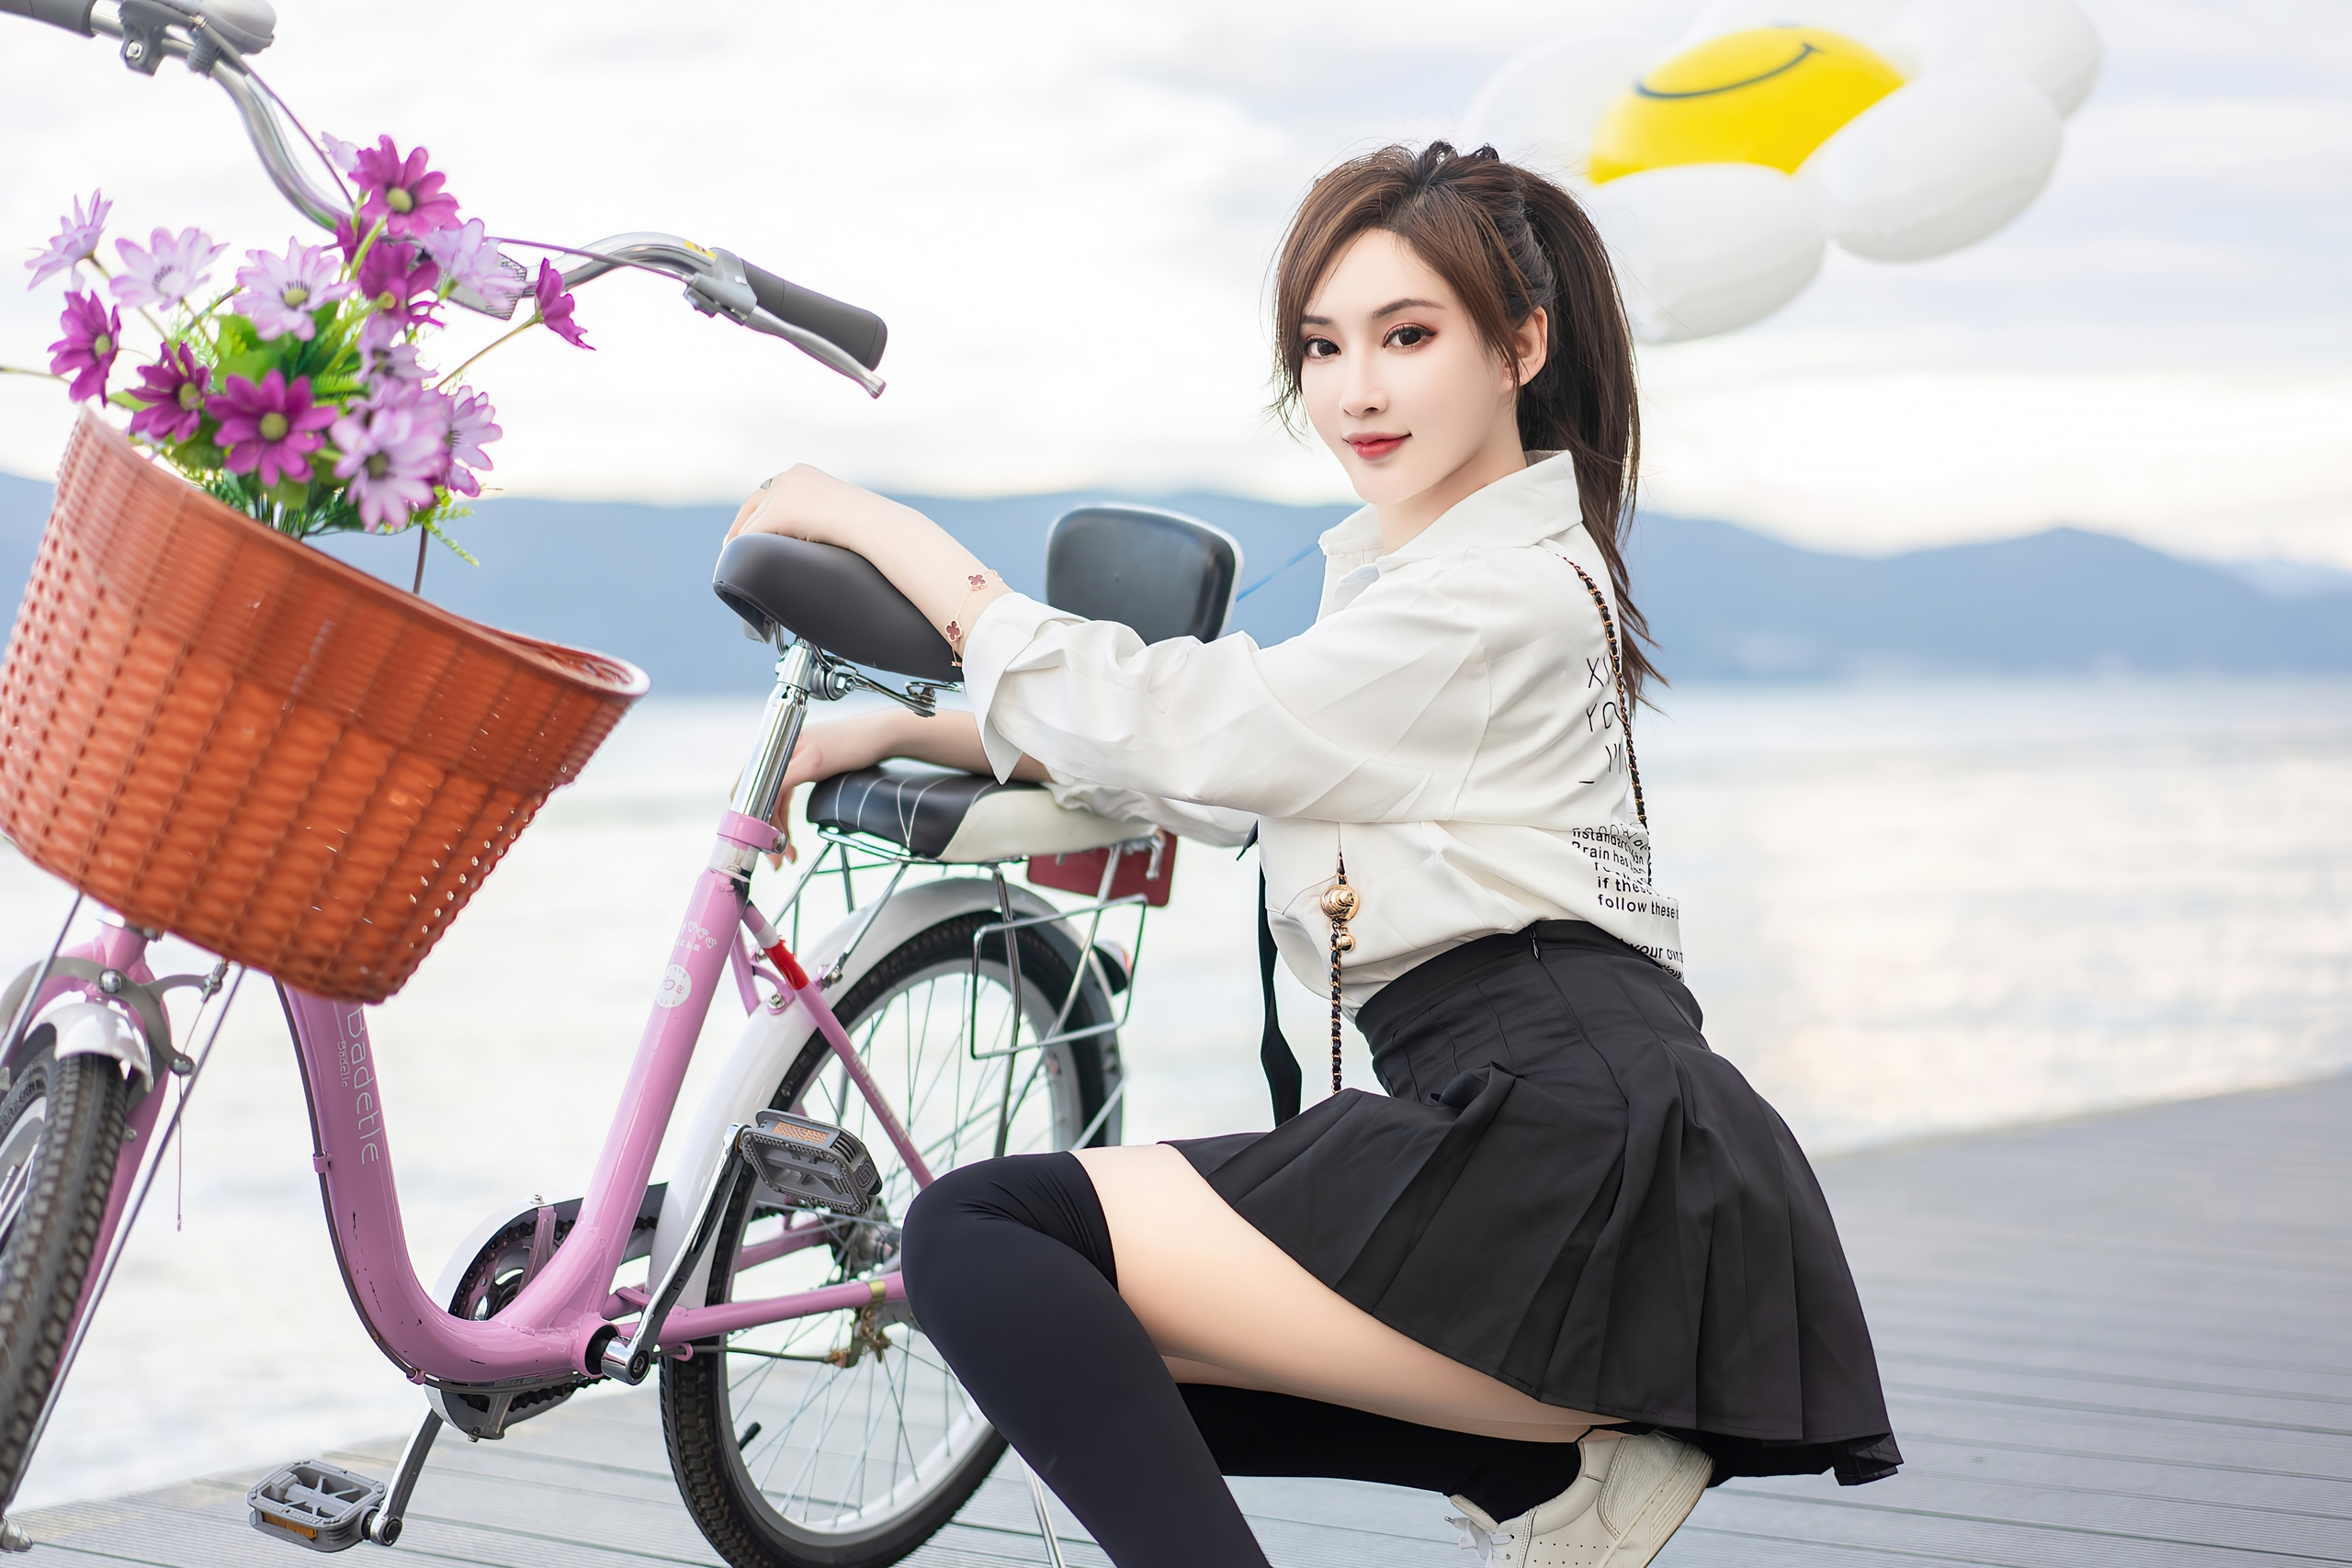 免费照片中国摄影模特周妍希身穿黑色超短裙和袜子，蹲在沙滩上的一辆自行车旁。